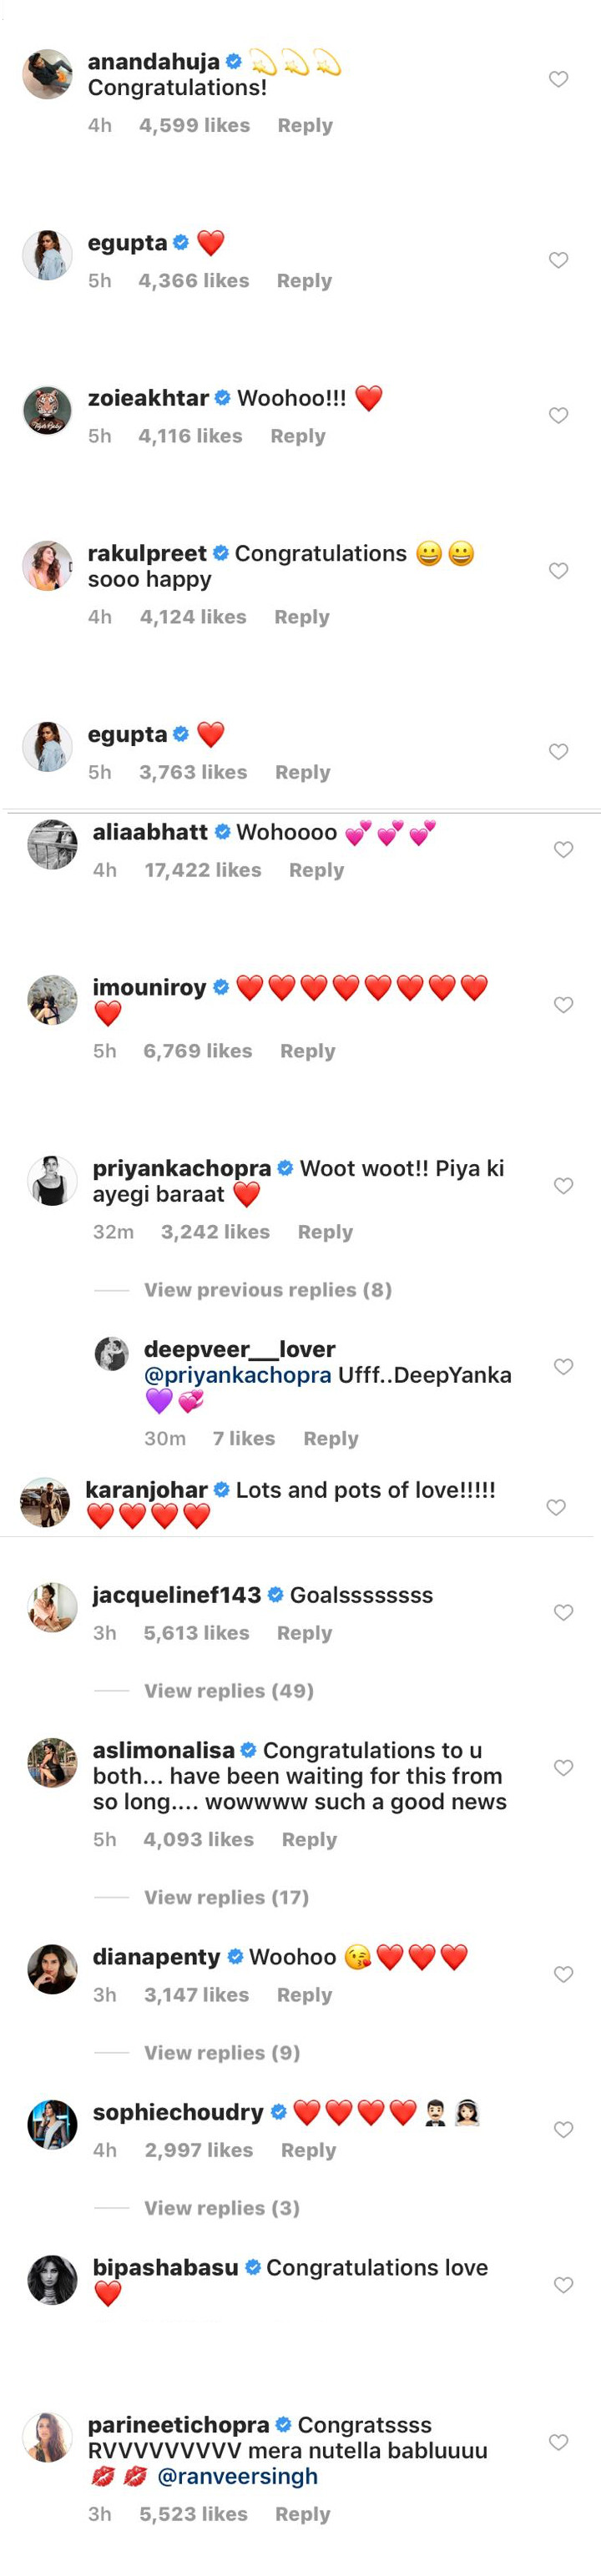 Tweets Of Bollywood Celebs On Ranveer Deepika Wedding Announcement